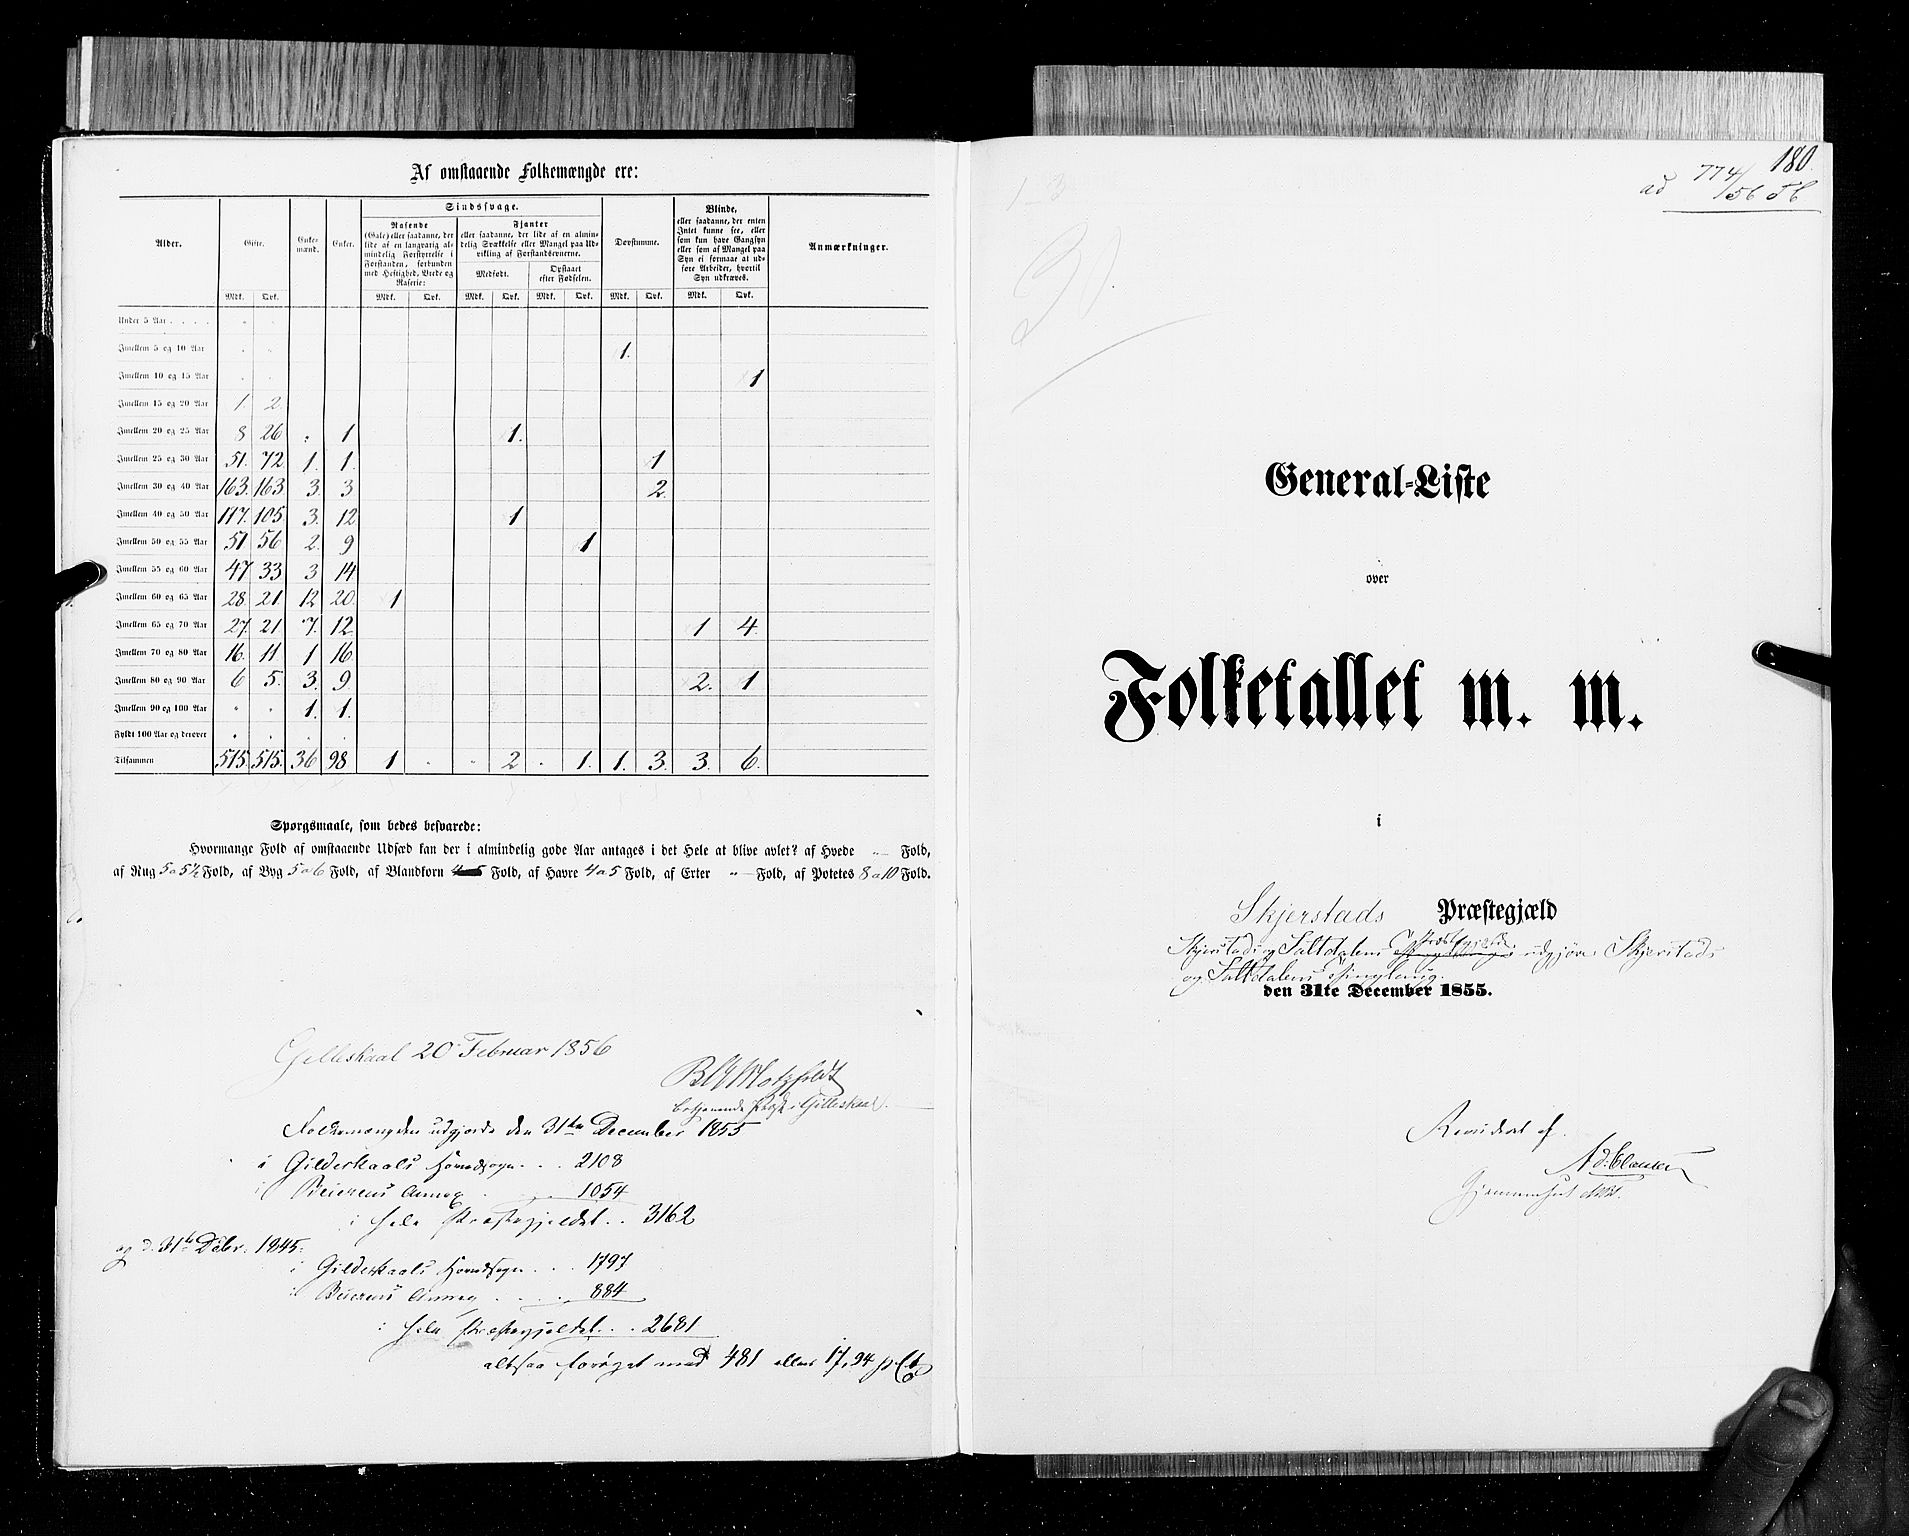 RA, Folketellingen 1855, bind 6B: Nordland amt og Finnmarken amt, 1855, s. 180